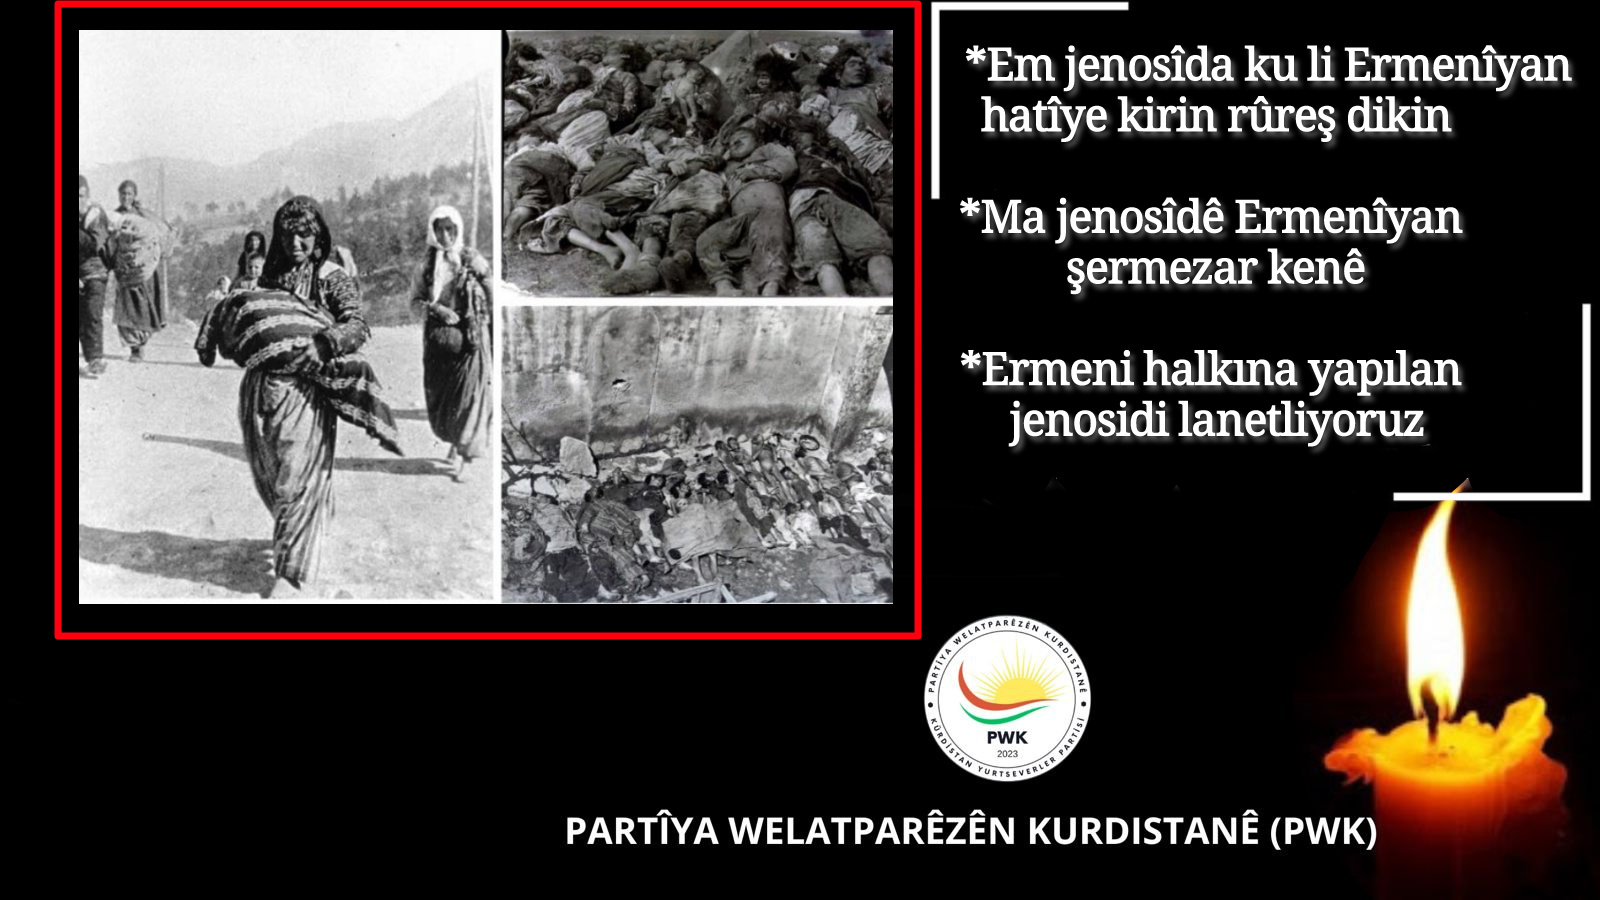 PWK: Ma Jenosîdê Ermenîyan Şermezar Kenê